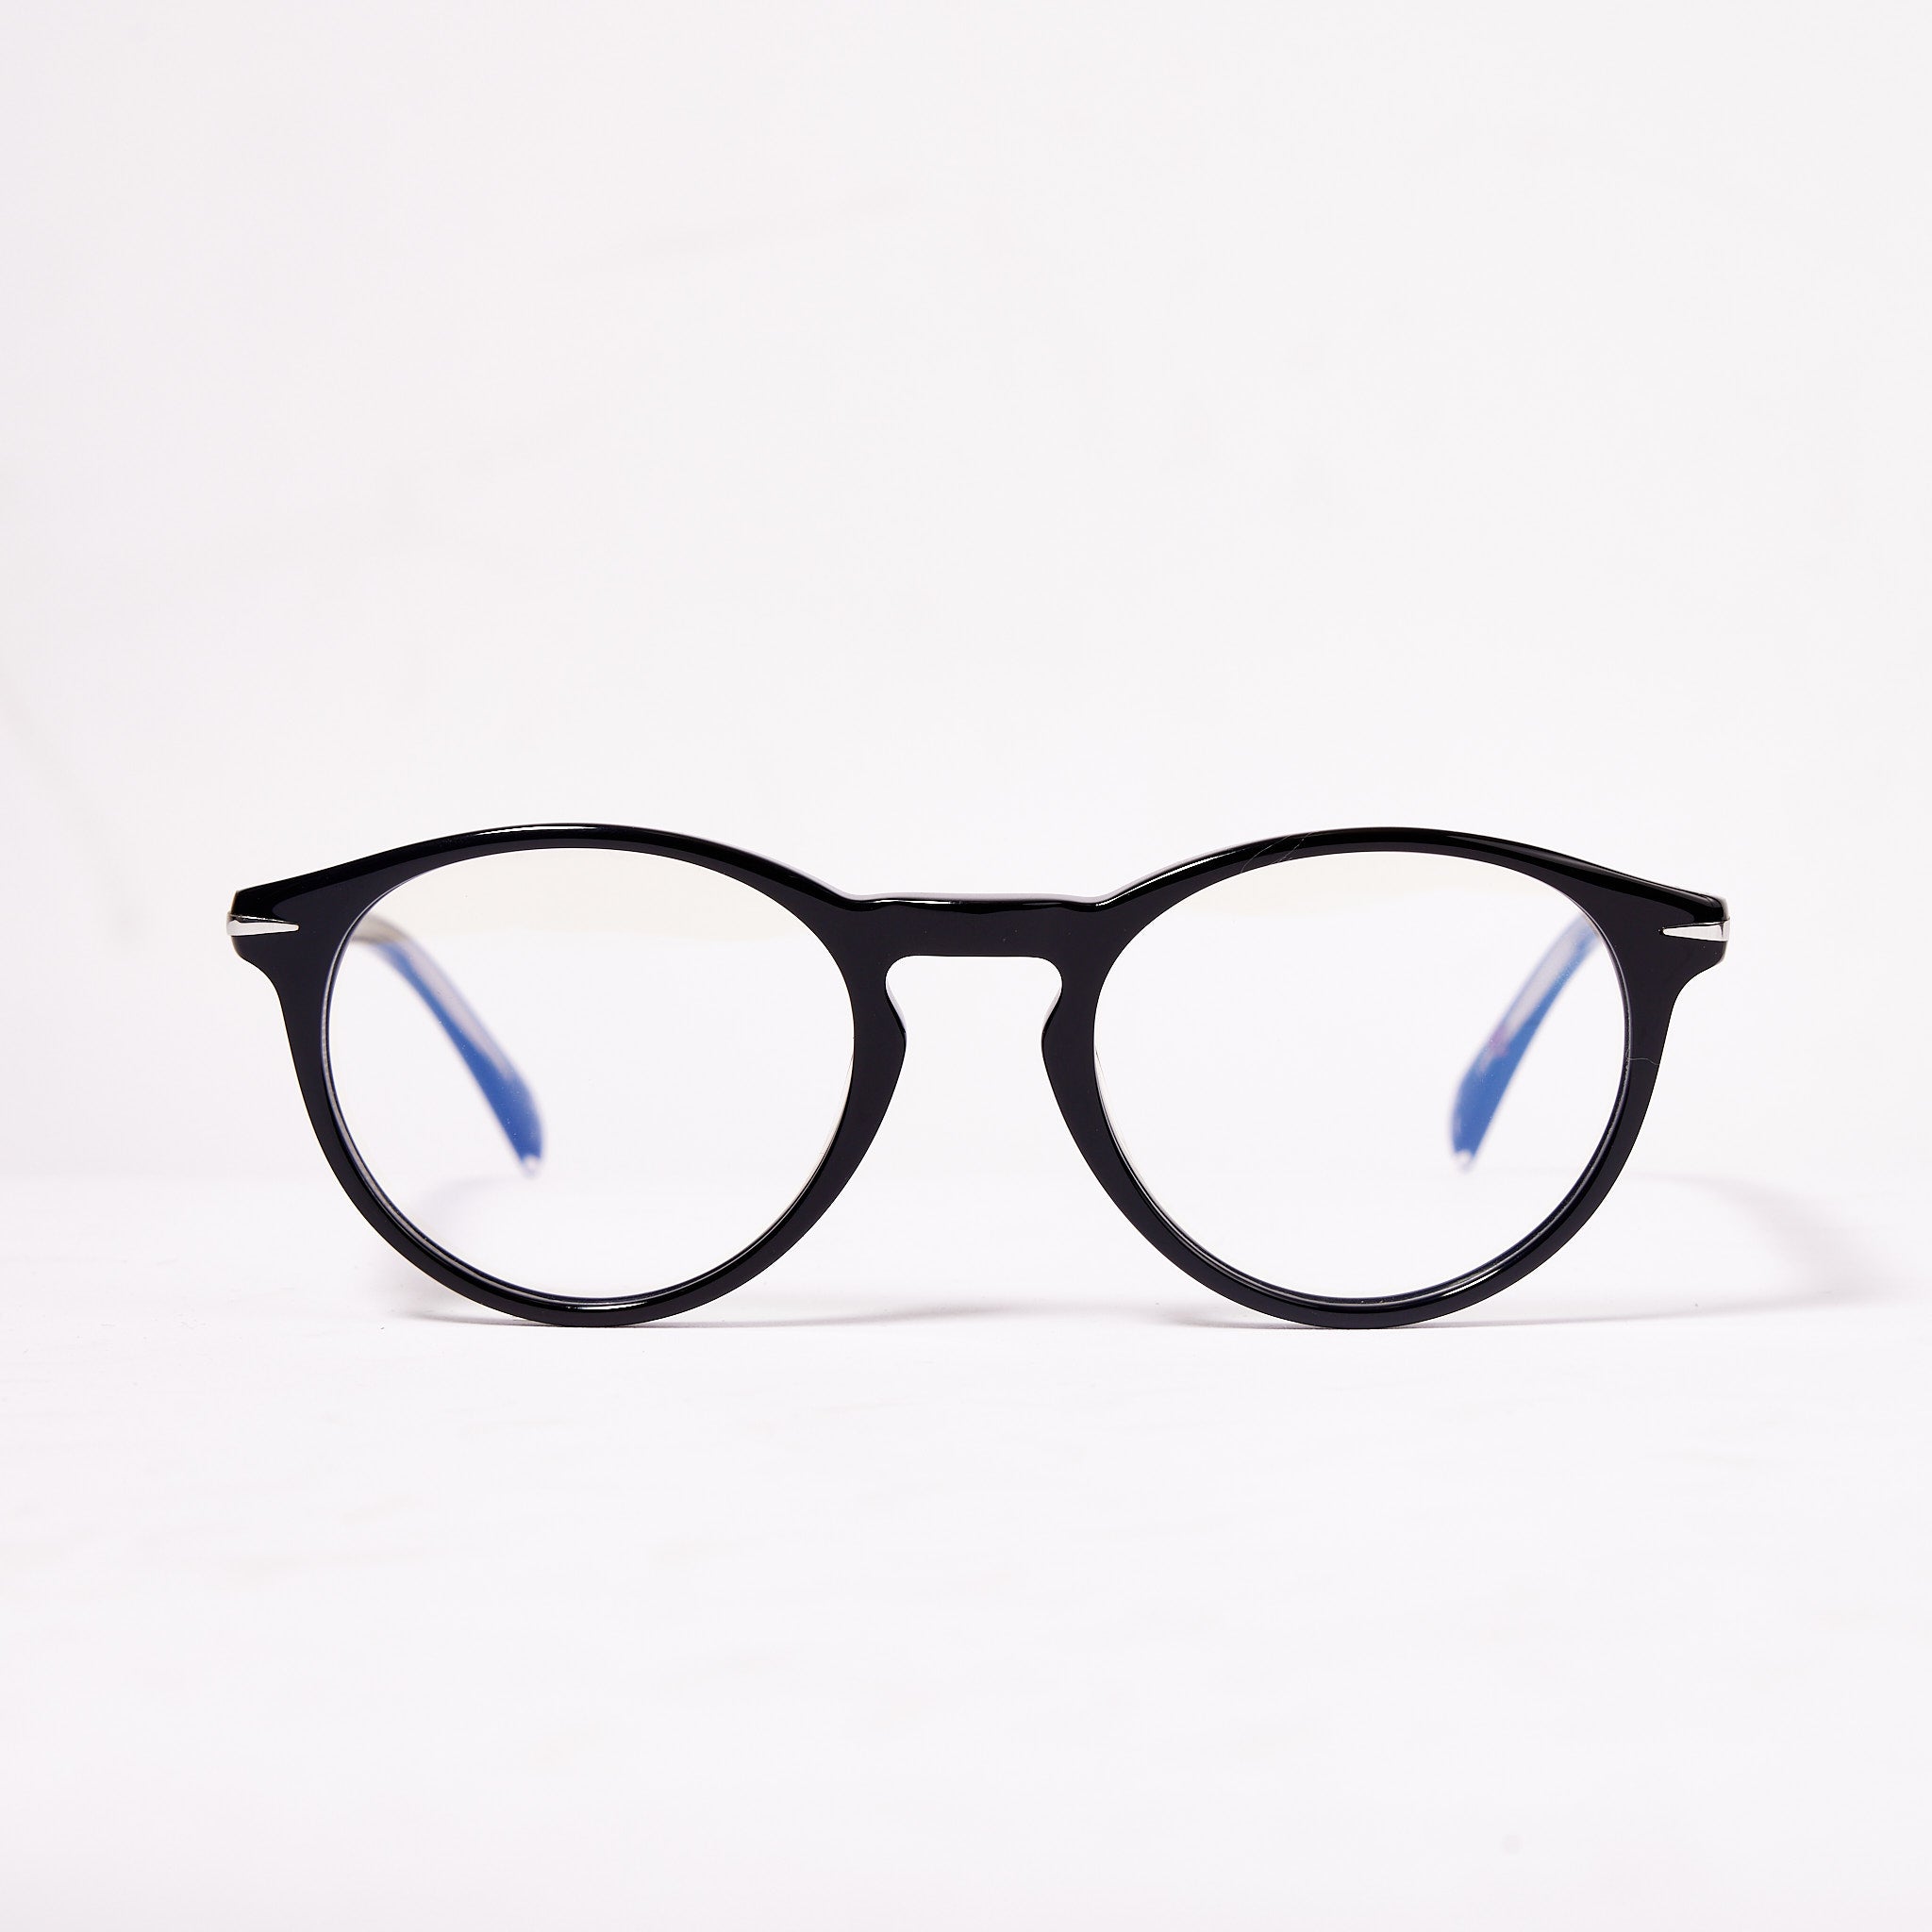 Tout savoir sur les verres de lunettes anti-lumière bleue